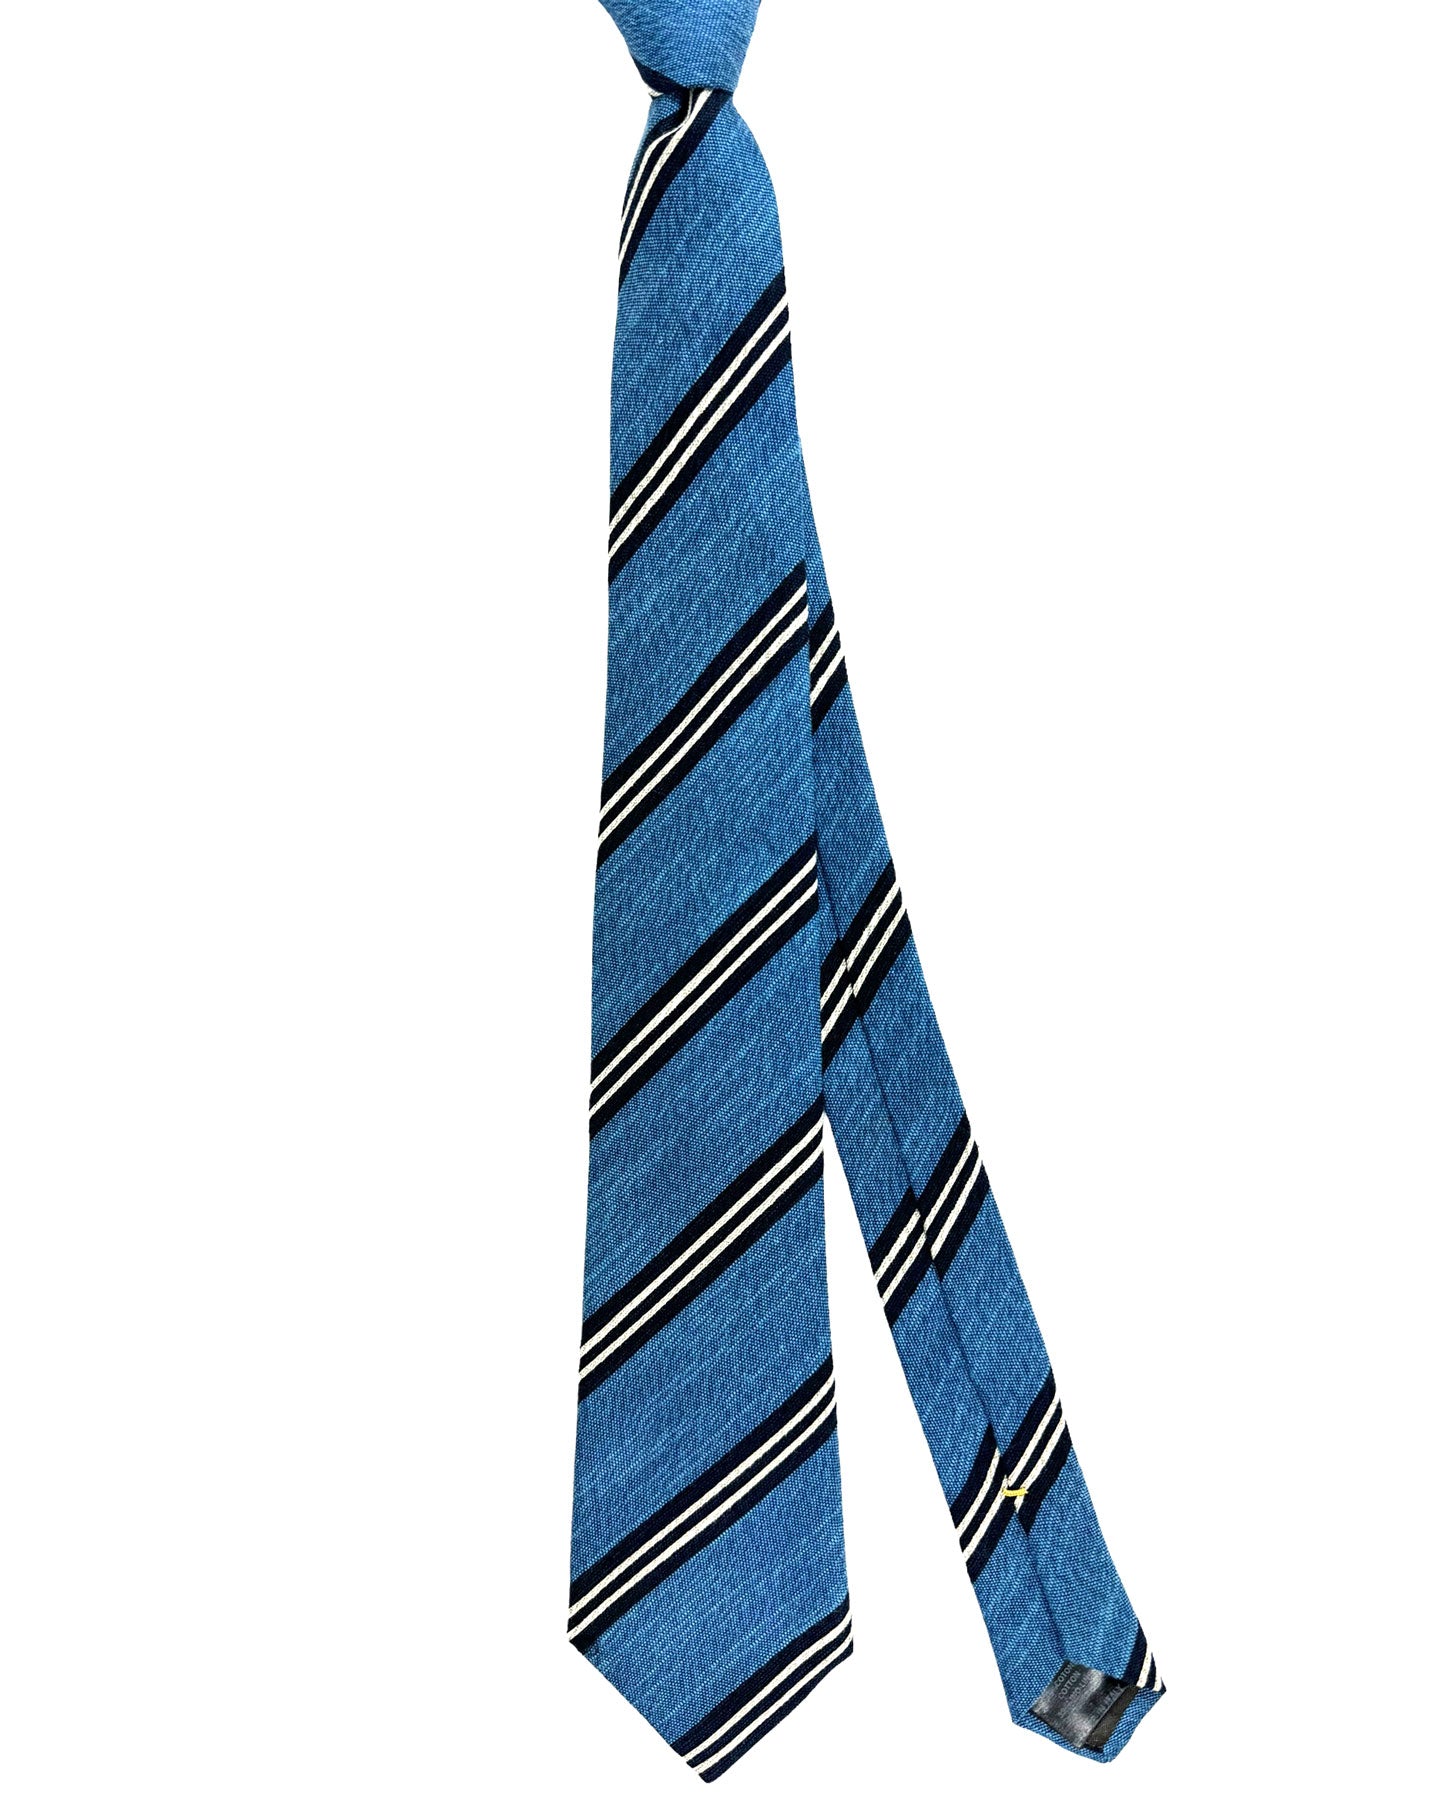 Canali Silk Tie Blue Dark Blue Stripes Pattern - Classic Italian